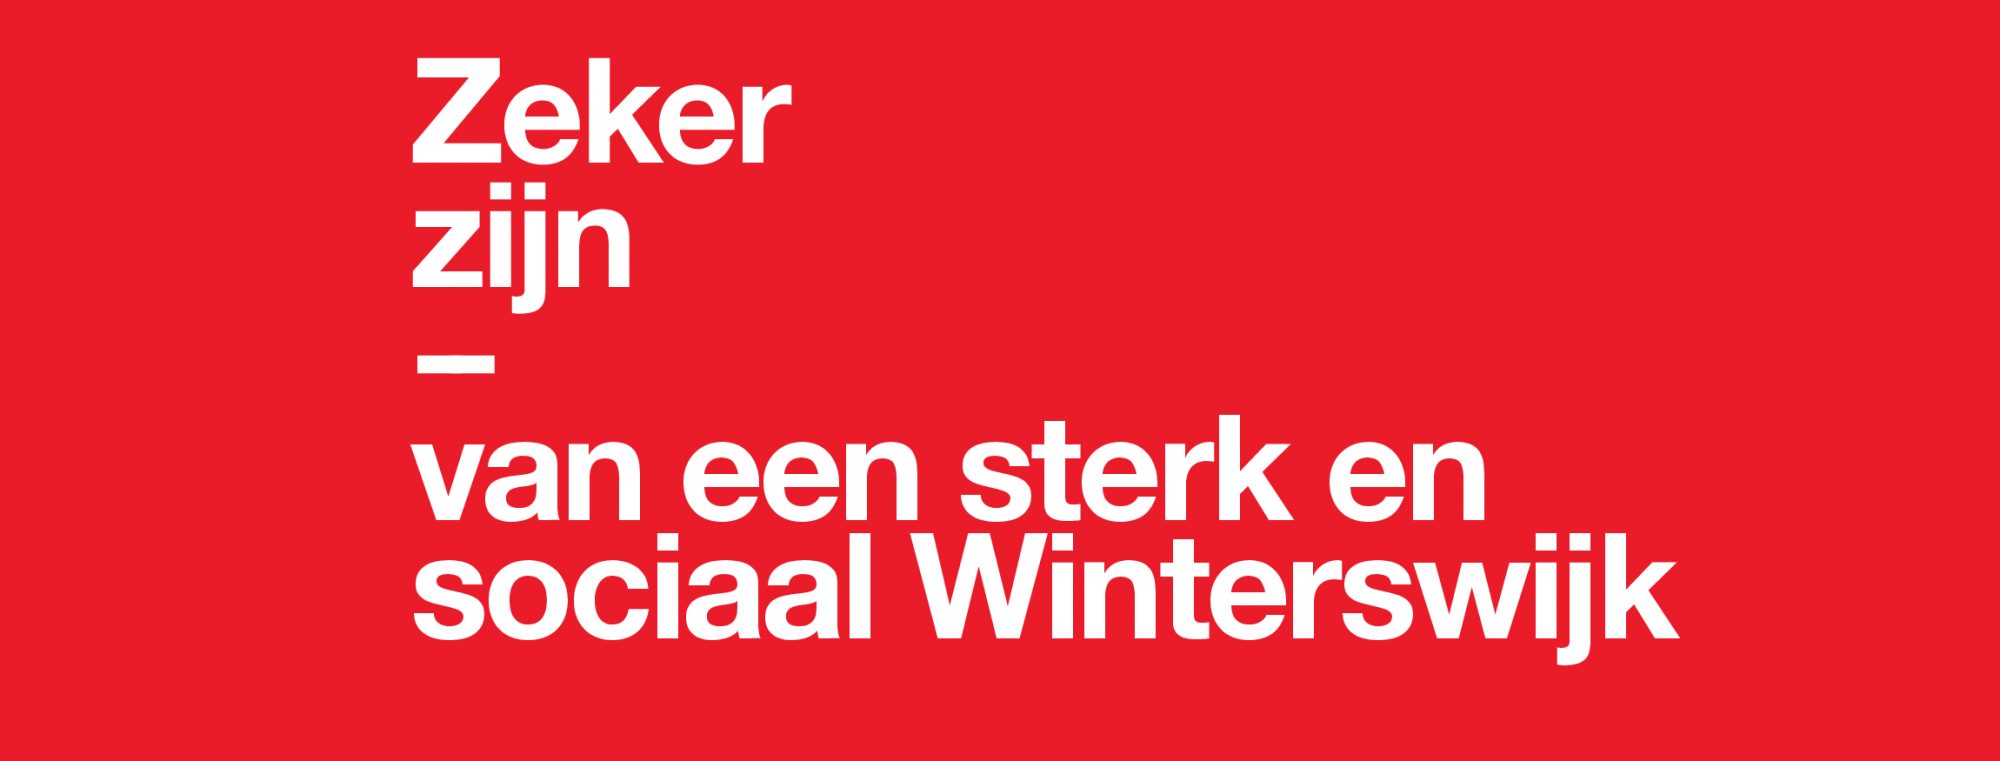 https://winterswijk.pvda.nl/nieuws/voormalig-pvda-voorzitter-hans-spekman-spreekt-op-symposium-in-winterswijk/